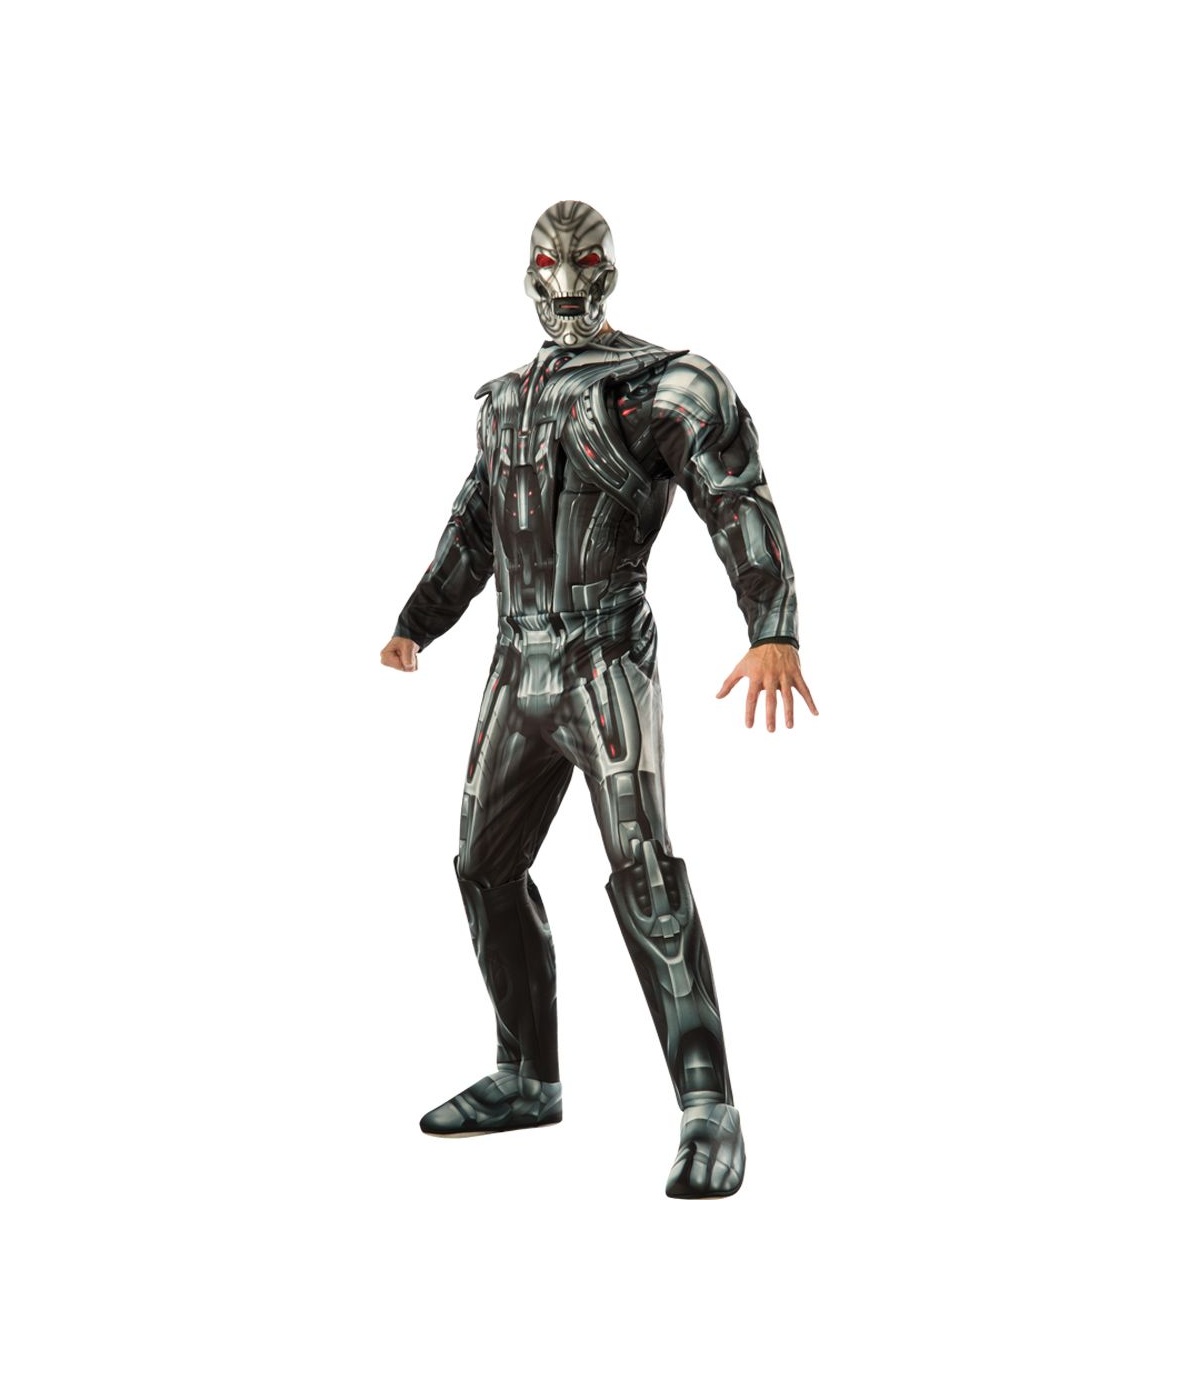  Mens Ultron Marvel Avengers Costume